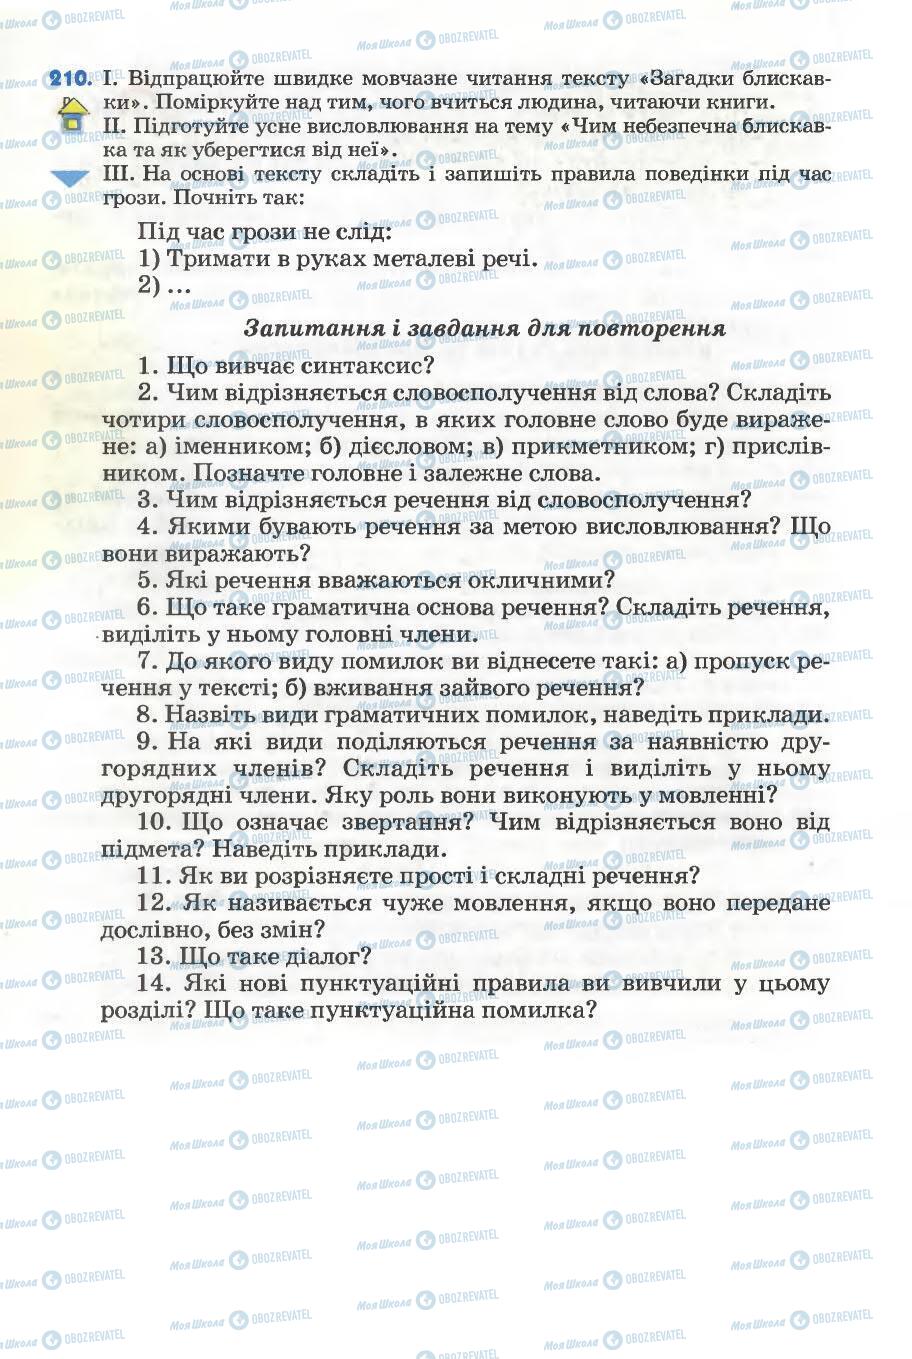 Підручники Українська мова 5 клас сторінка 94